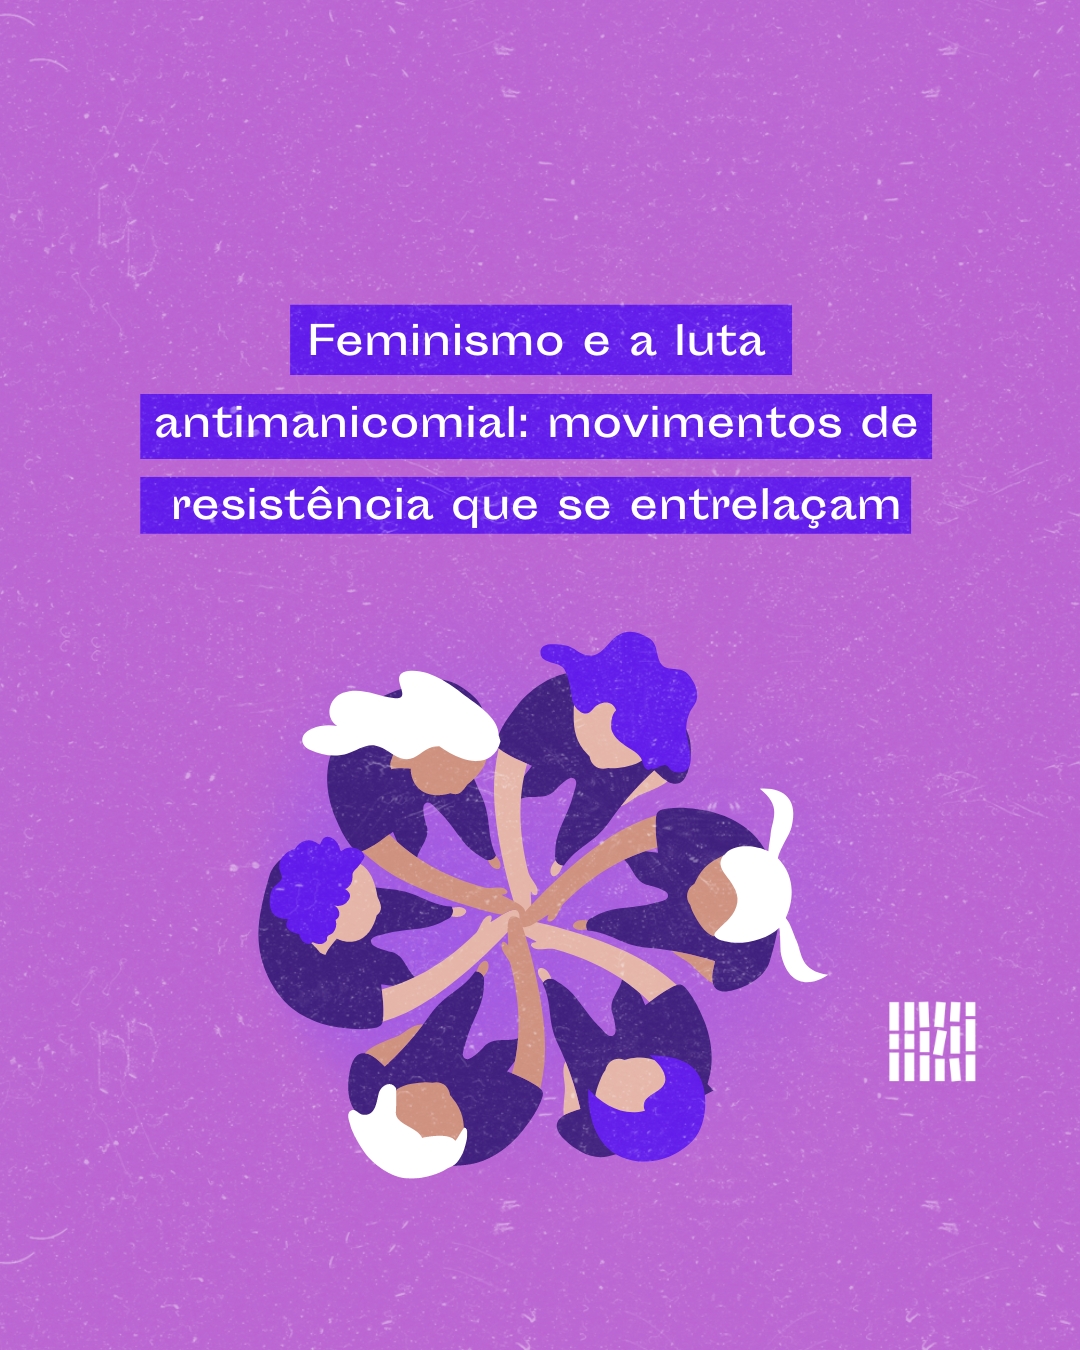 Feminismo e a luta antimanicomial: movimentos de resistência que se entrelaçam